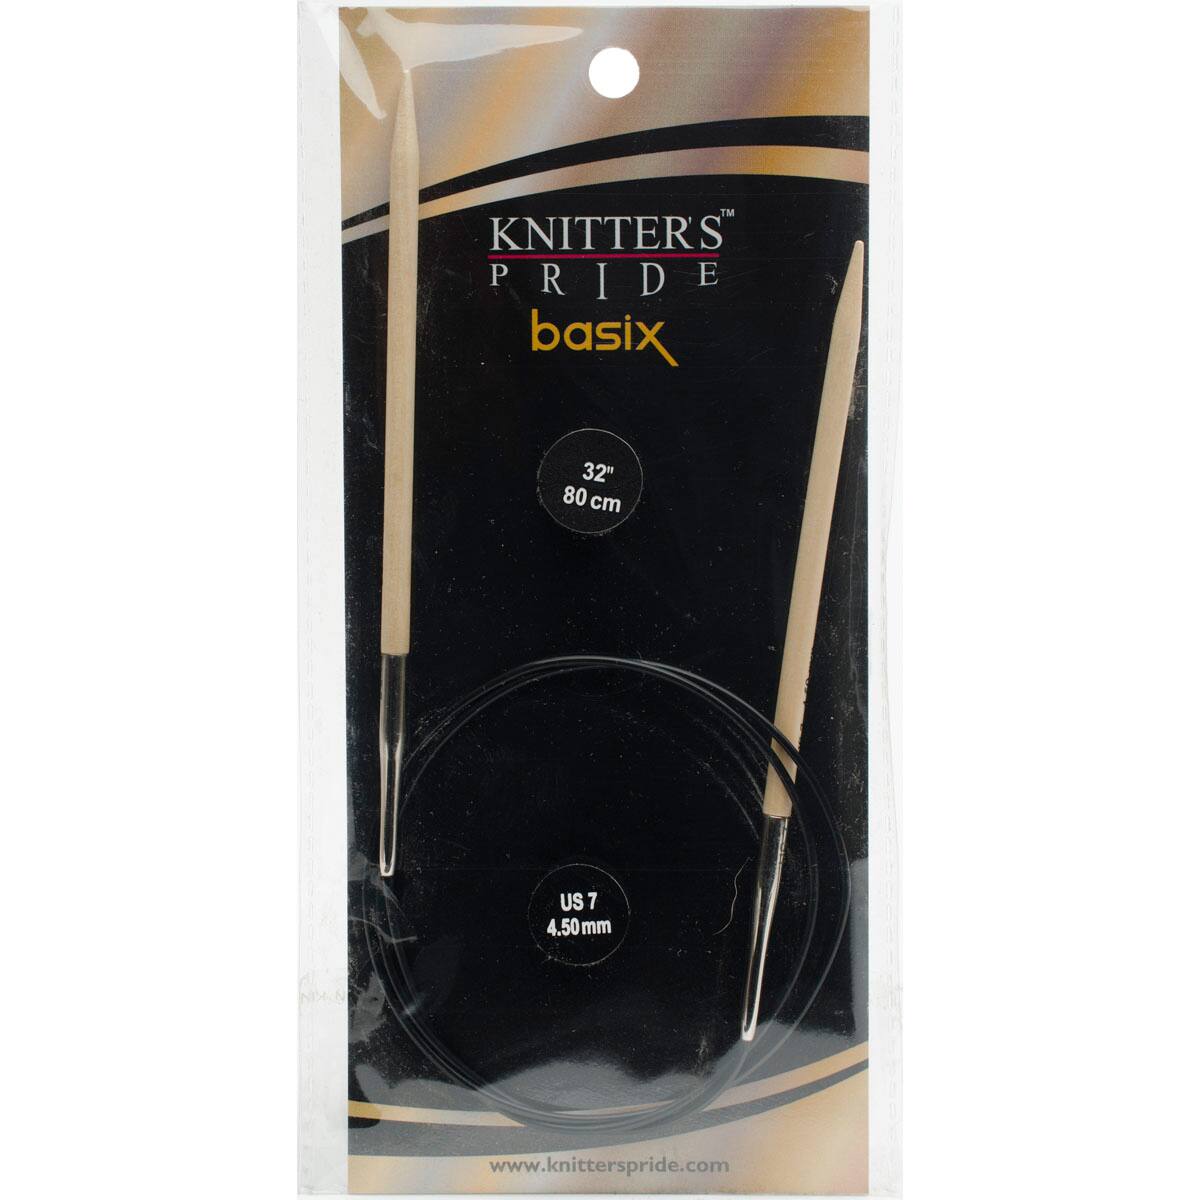 Knitter's Pride™ Basix Fixed Circular Knitting Needles, 7 / 4.5mm 